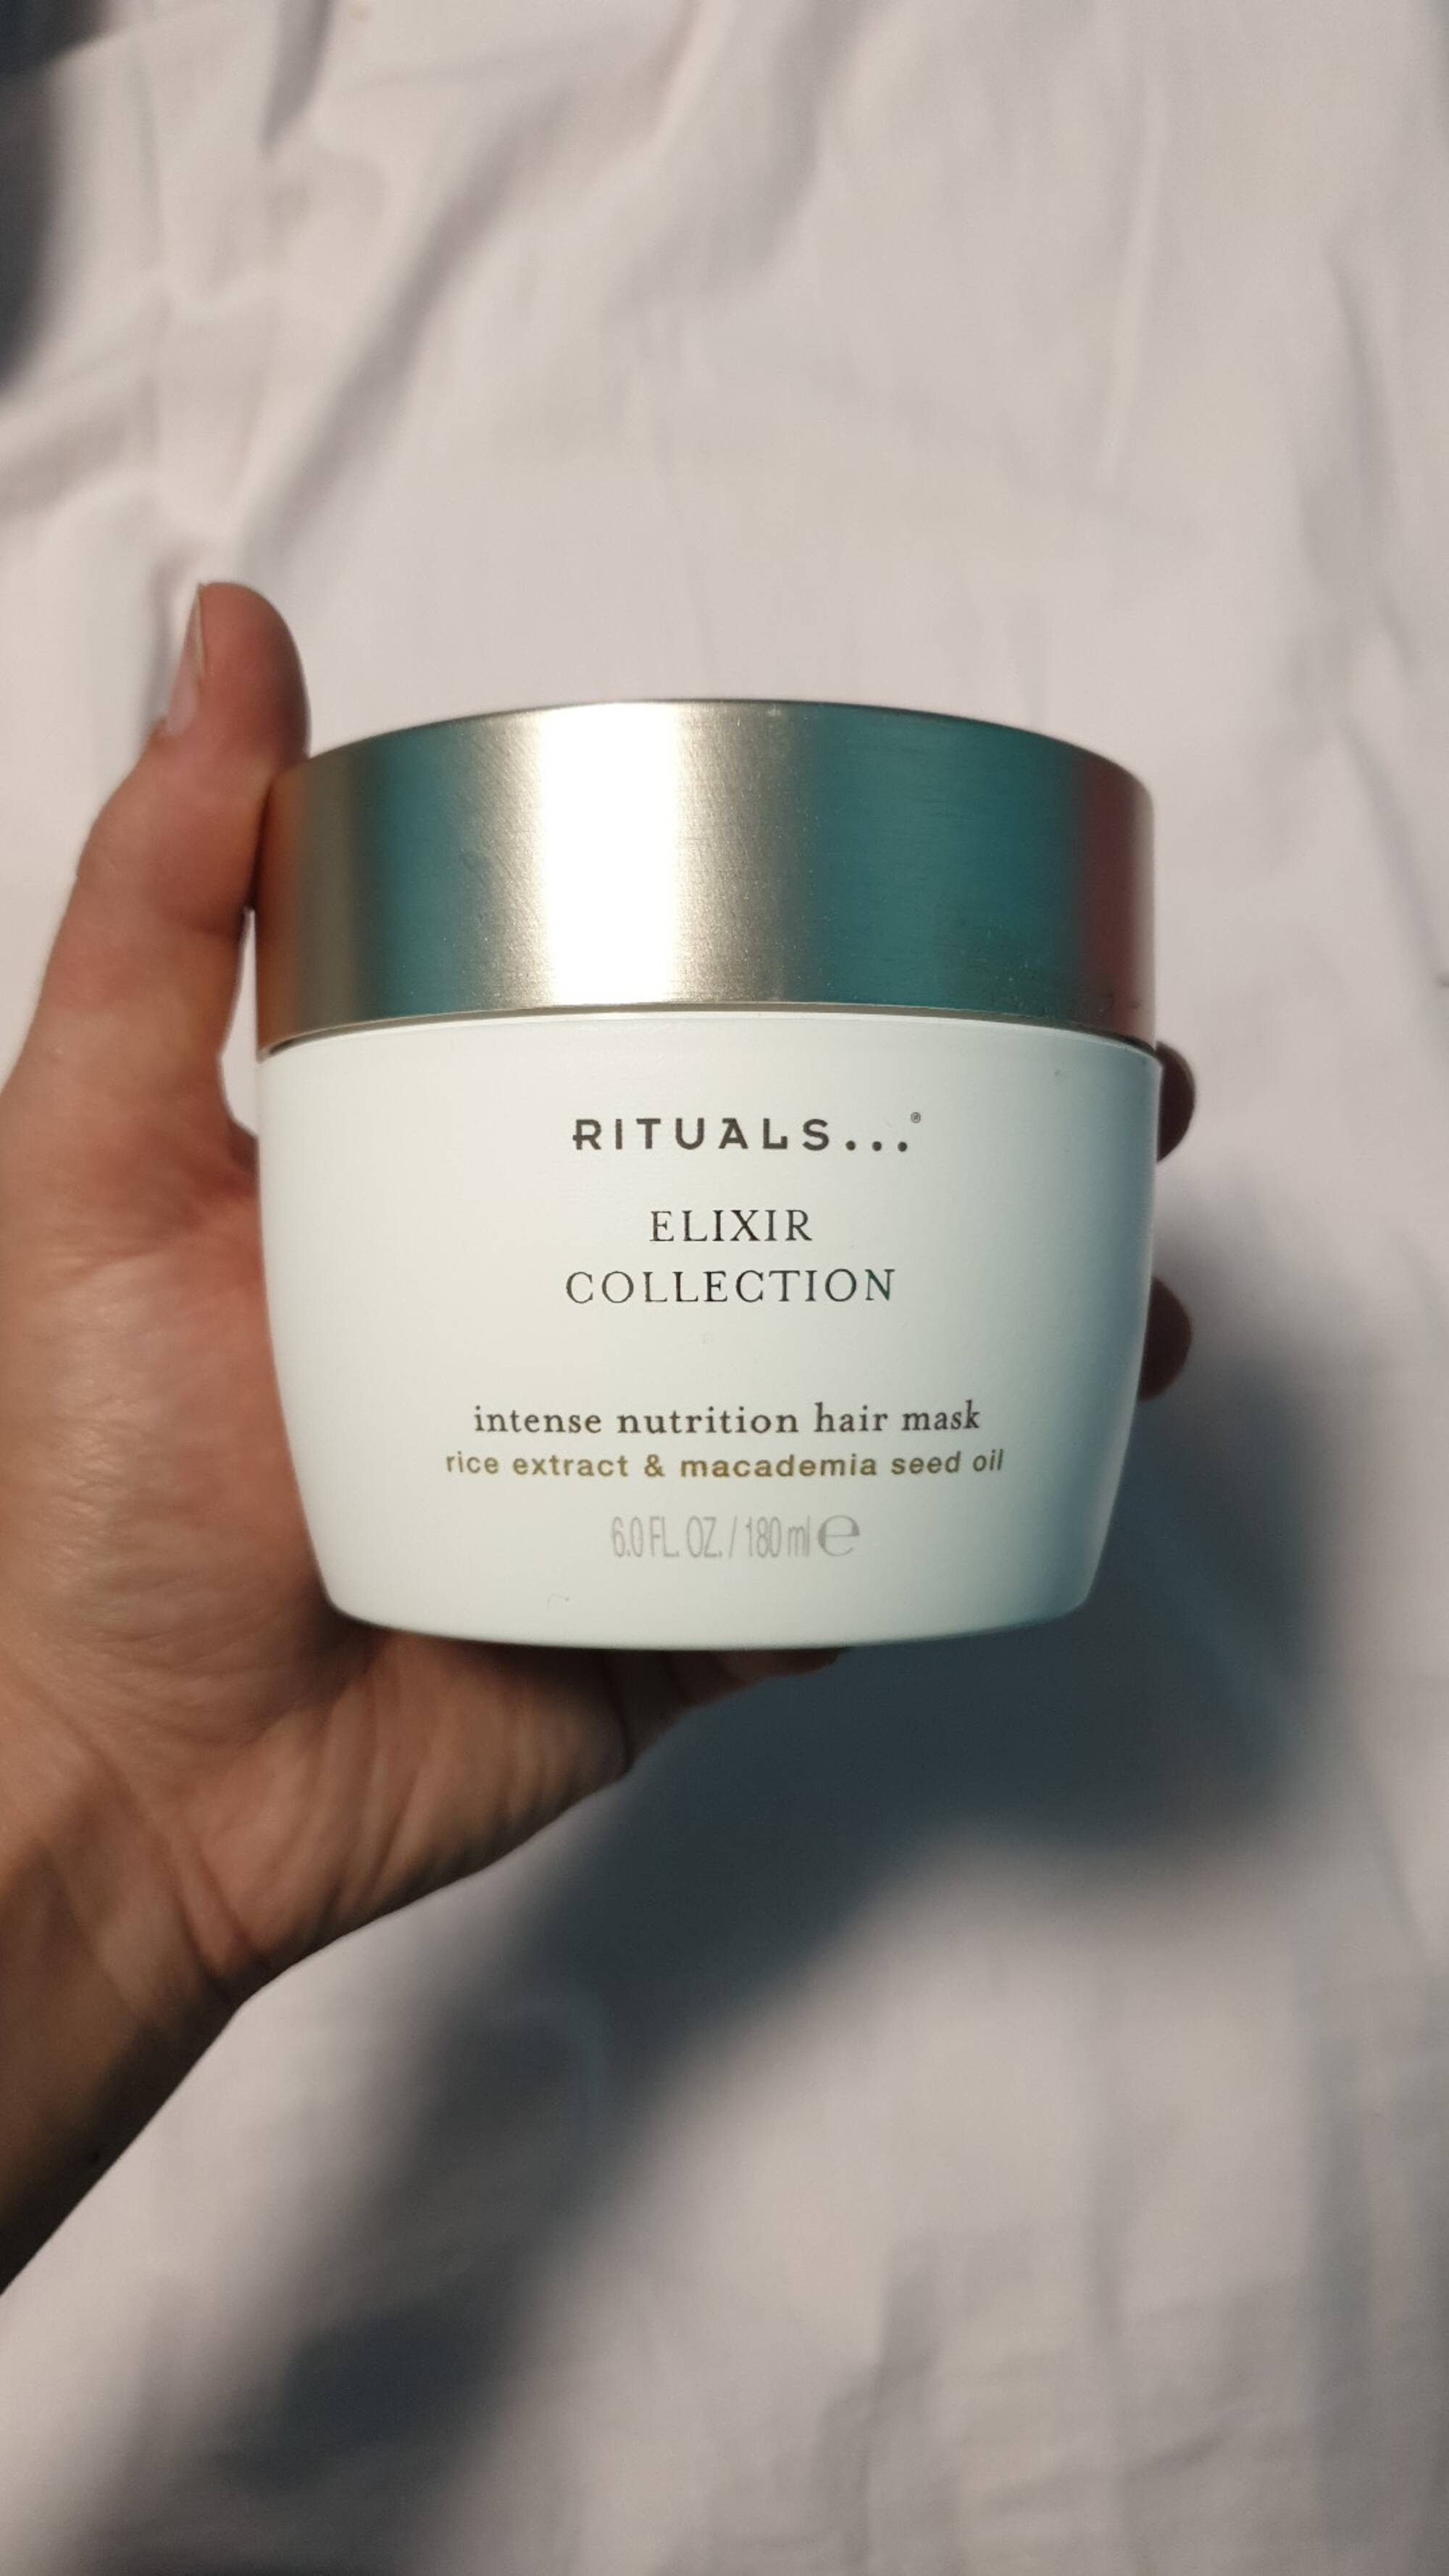 RITUALS - Elixir collection - Intense nutrition hair mask